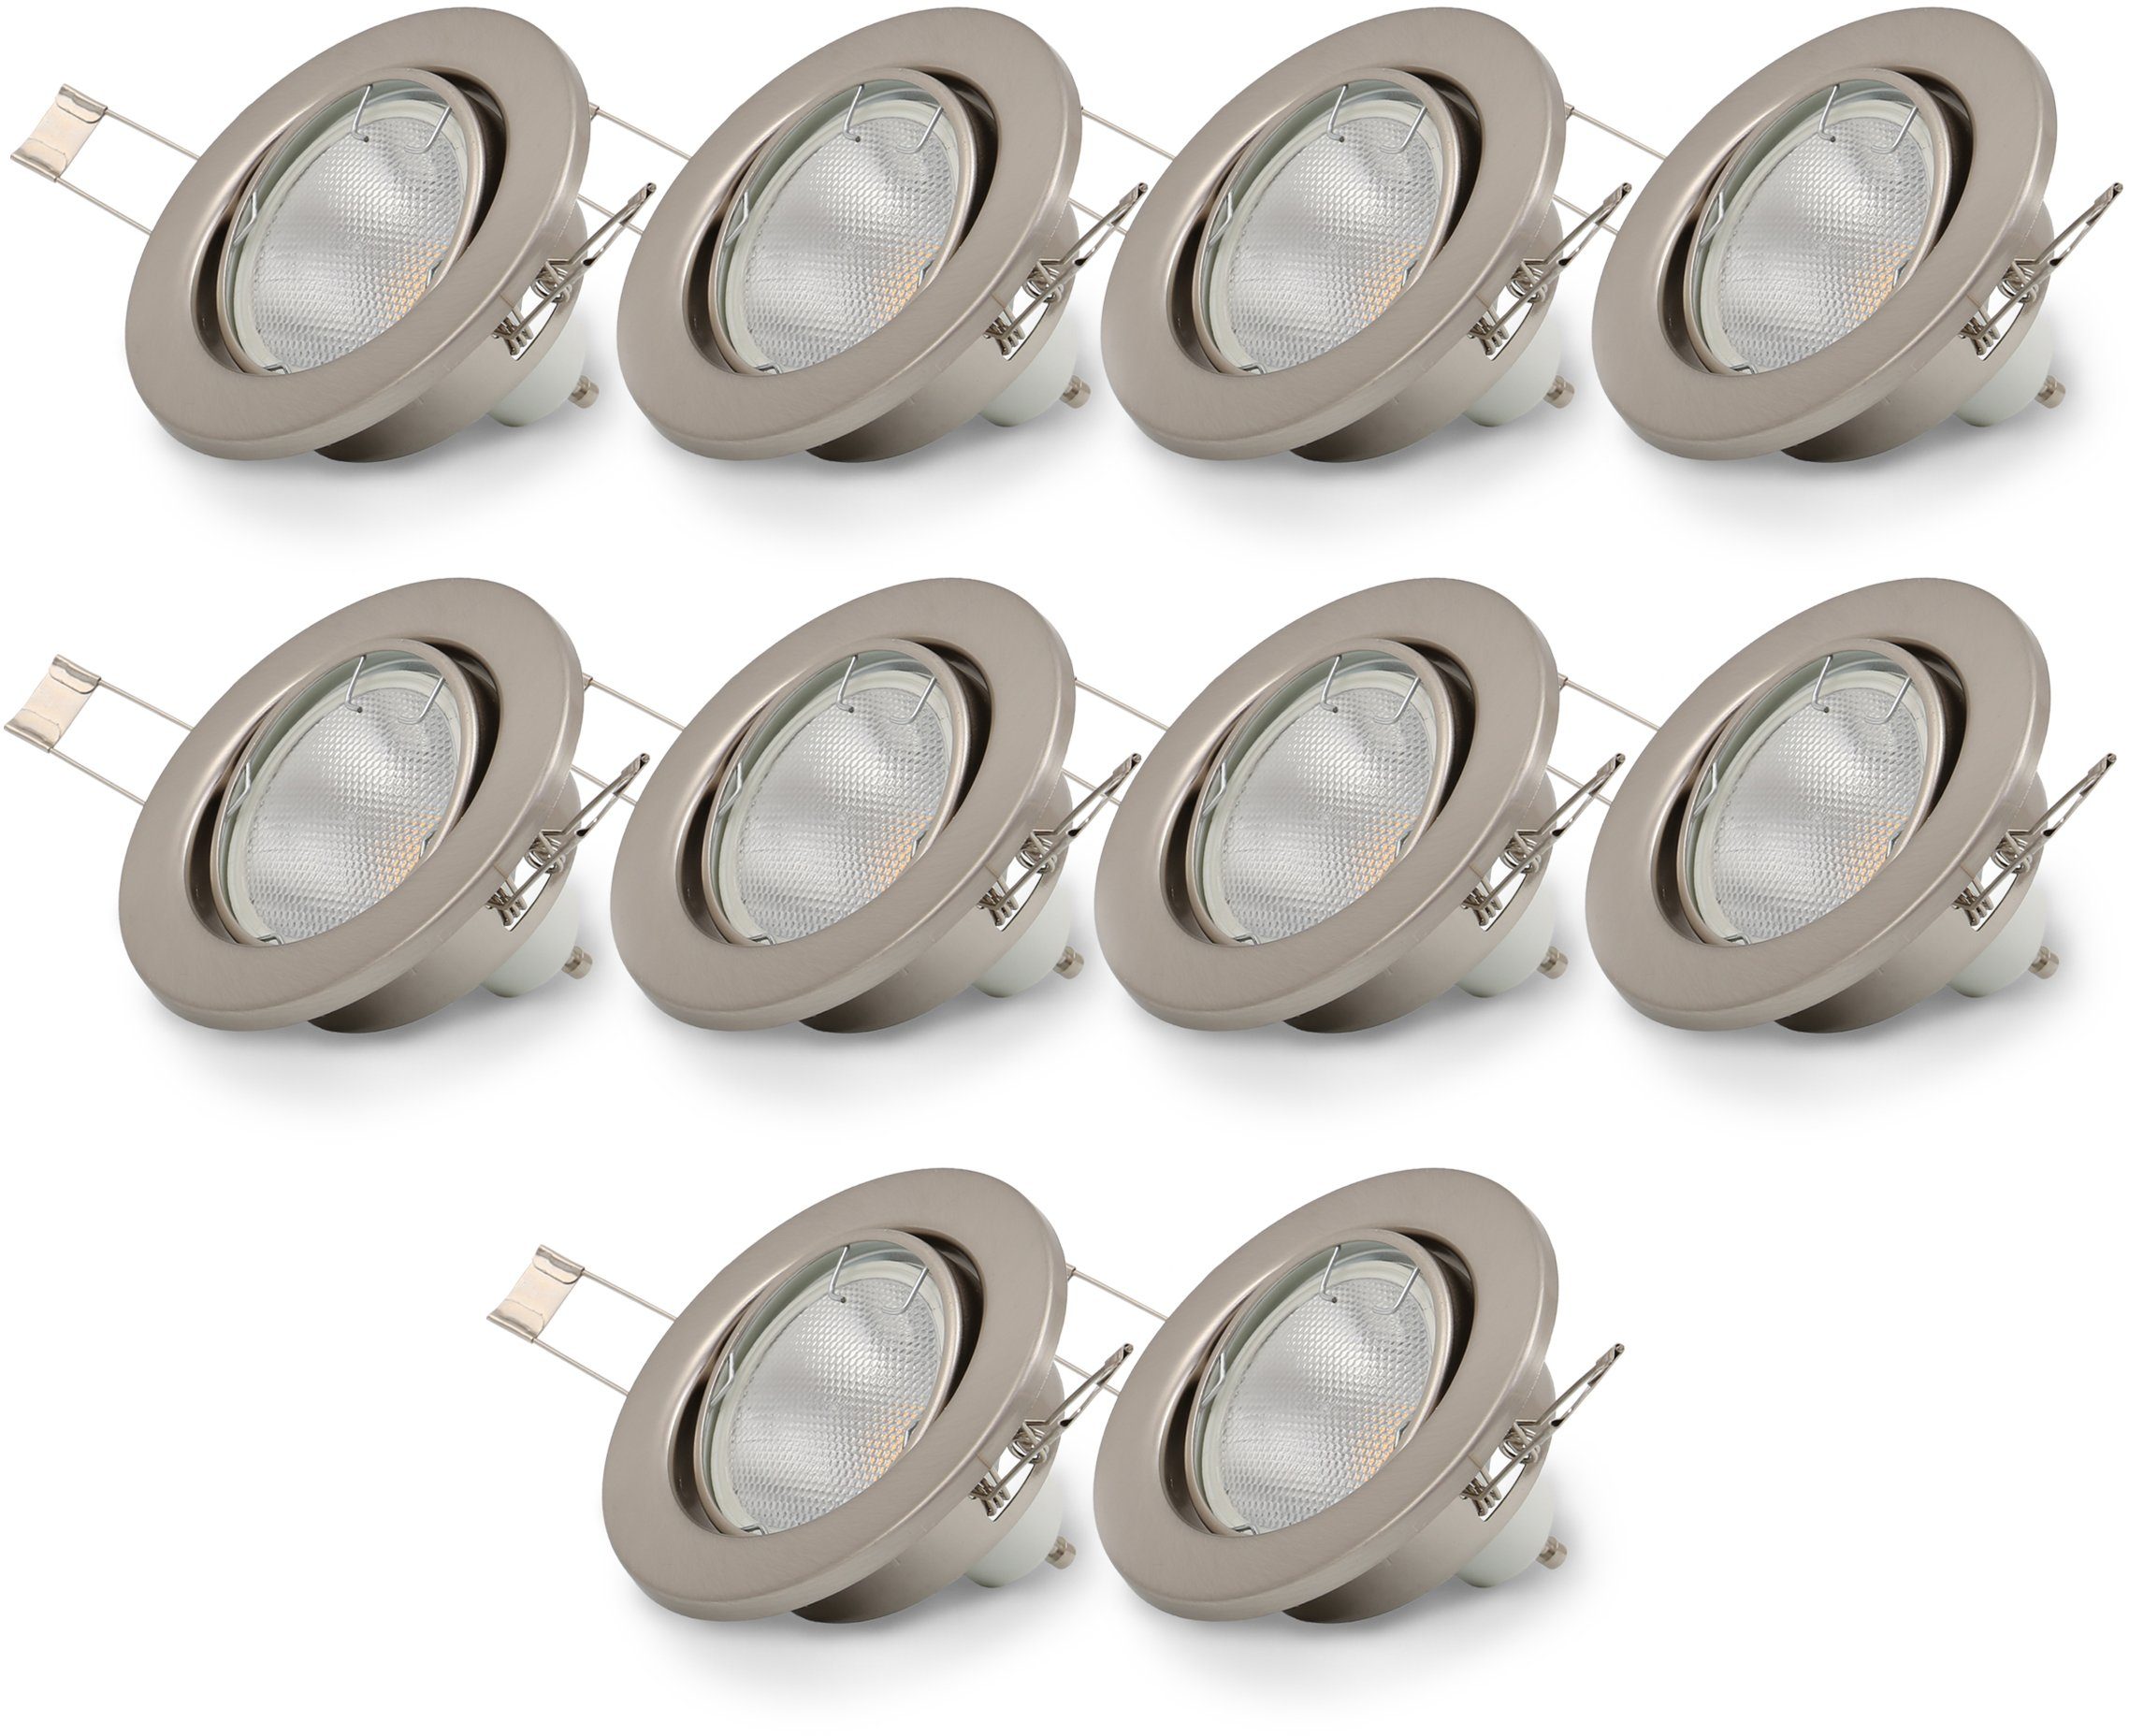 B.K.Licht LED Einbaustrahler, LED Warmweiß, schwenkbar, wechselbar, Einbauleuchten, nickel, matt LED GU10 Einbau-Spots